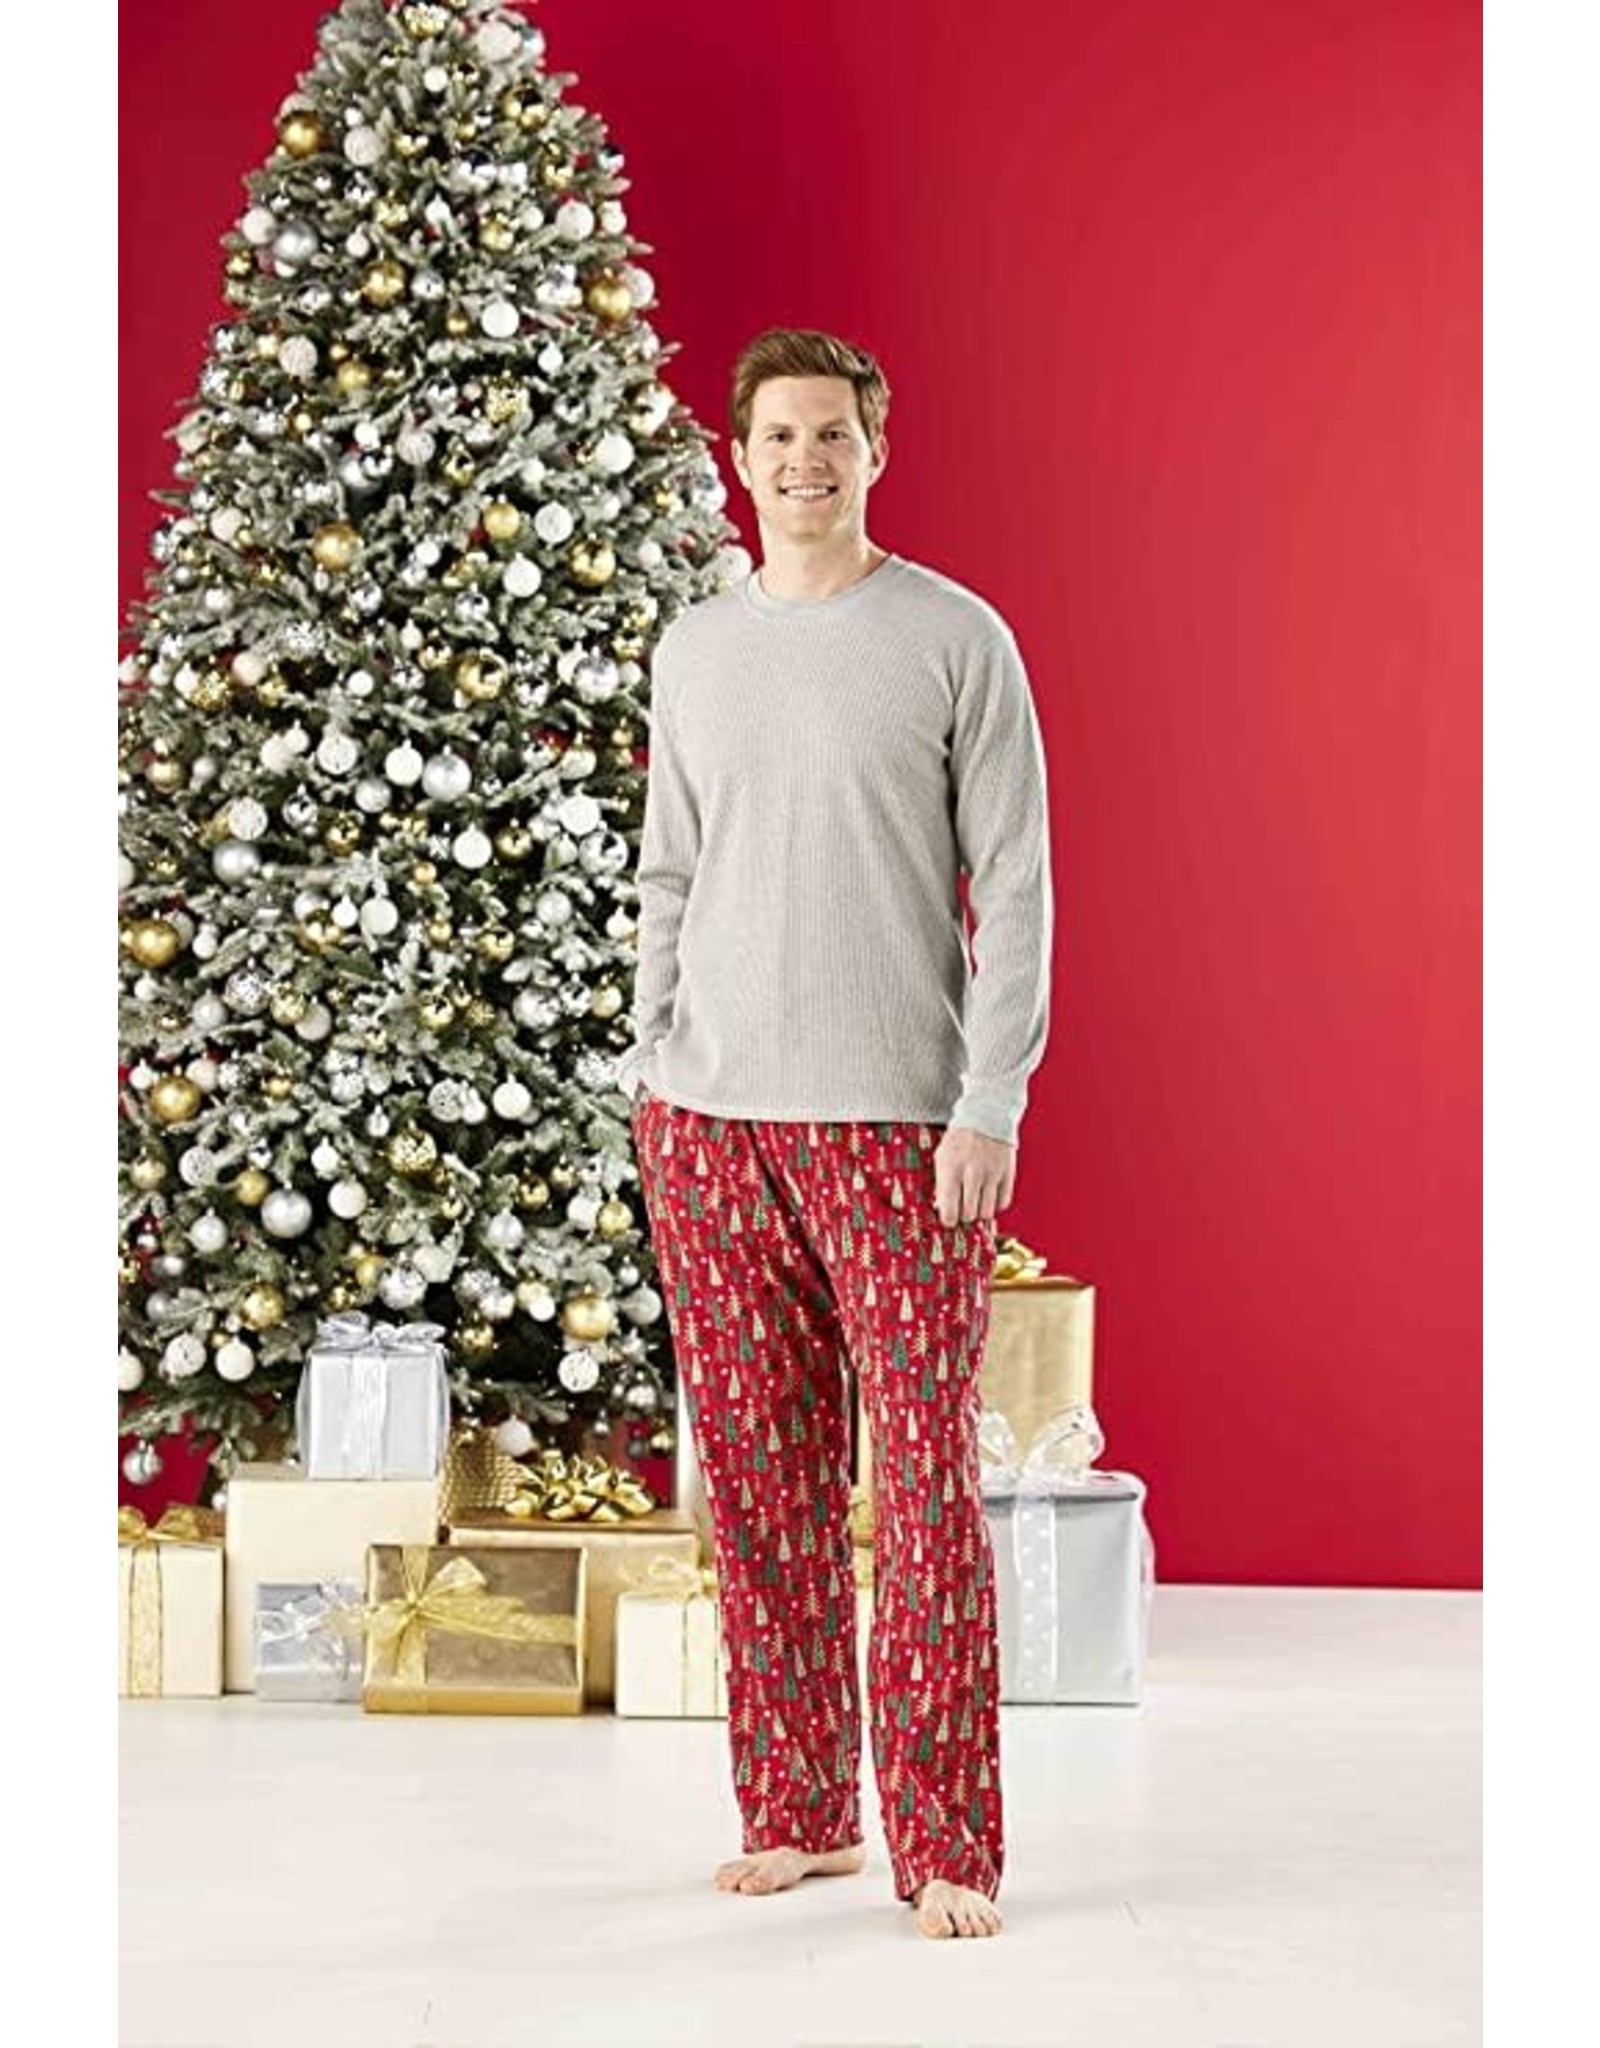 Mud Pie Christmas Sleepwear Family Pajamas 2pc Mens L